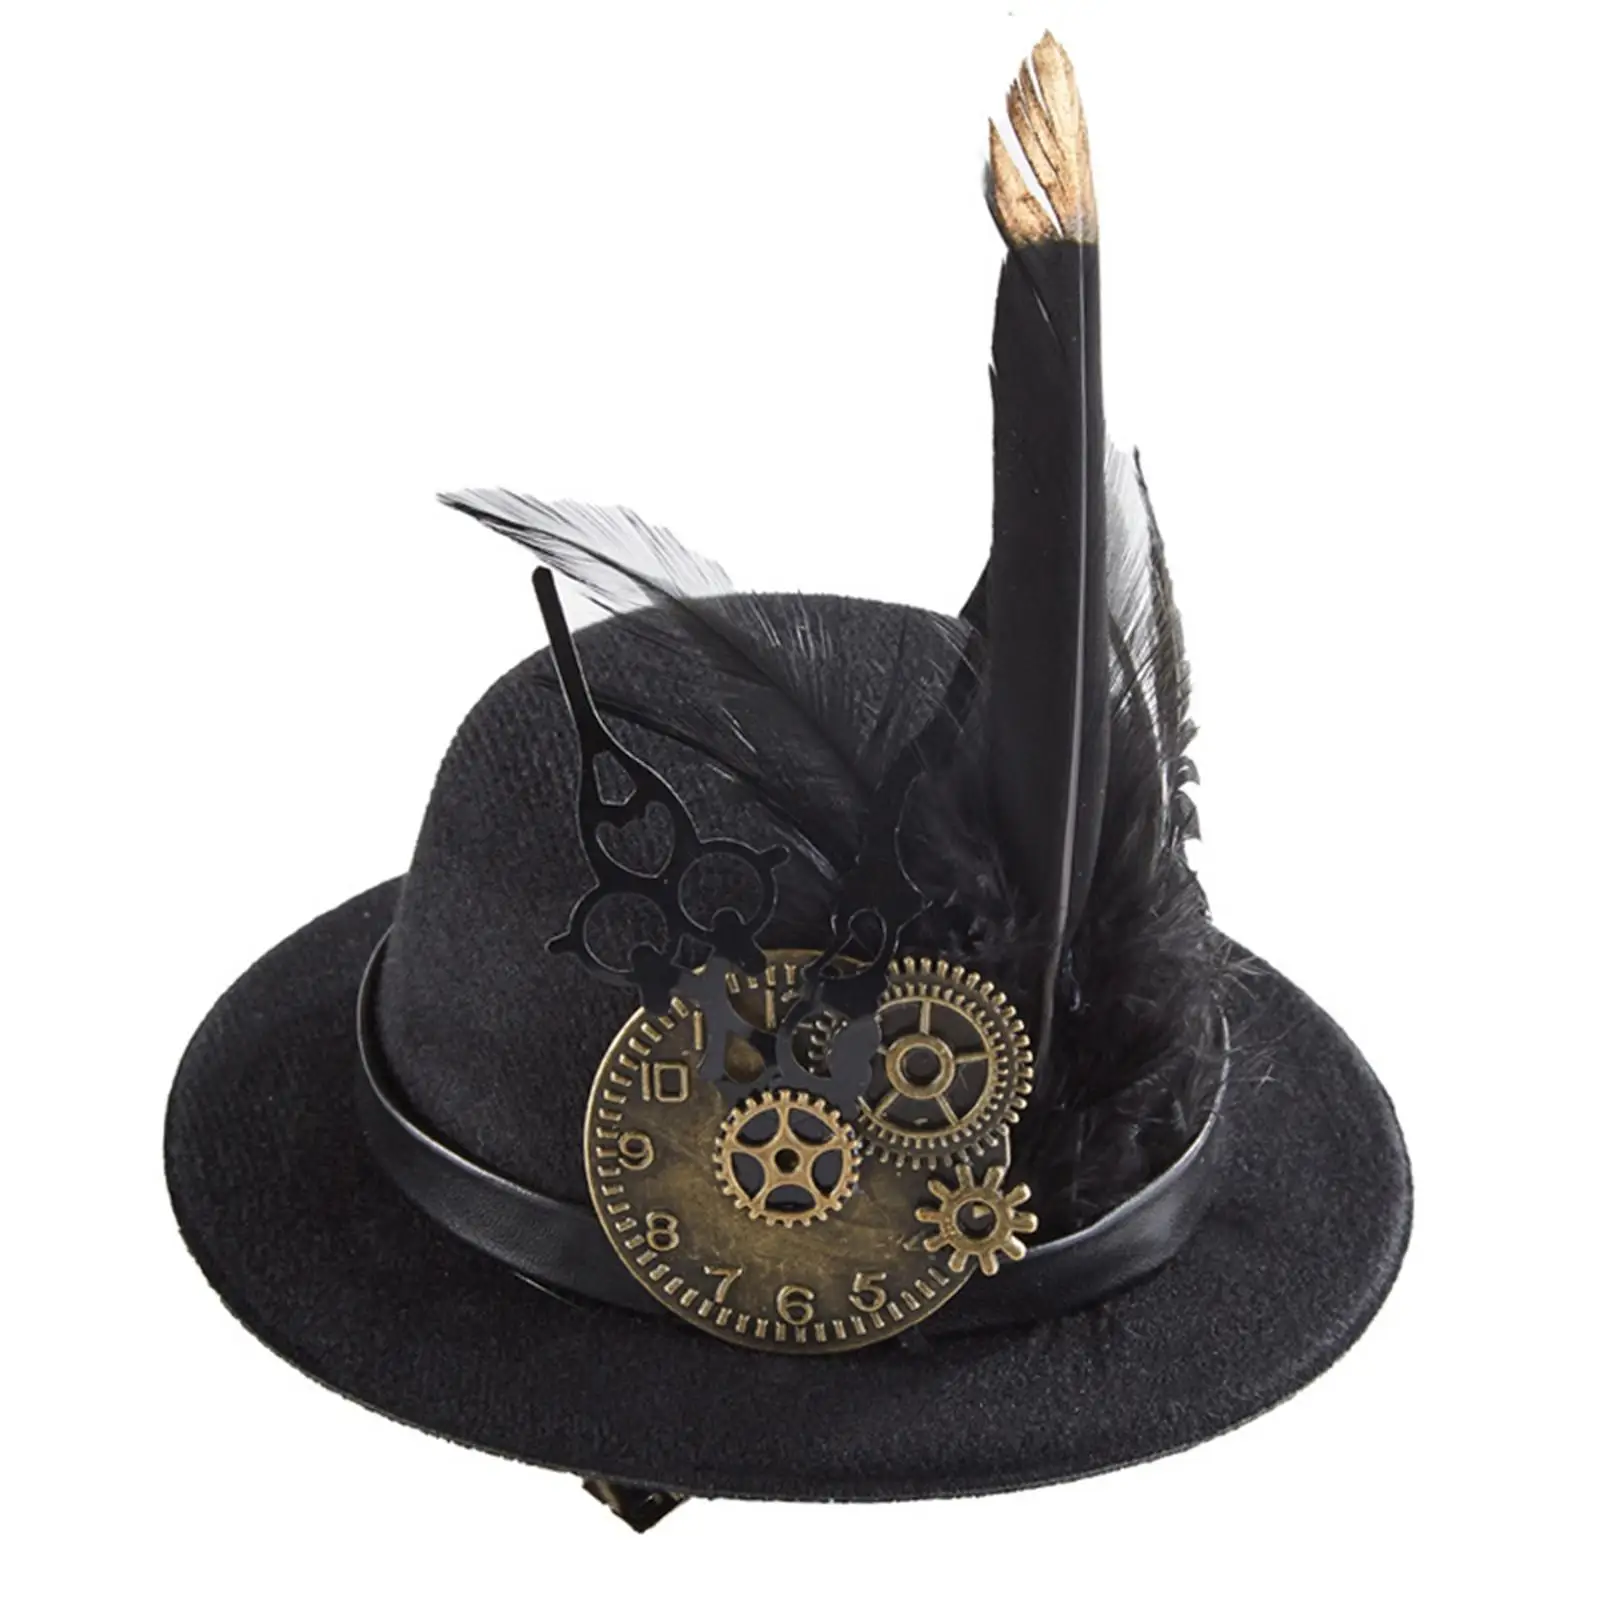 Steampunk Gears Top Hats Dance Hat Gears for Cosplay Gentlemen Fancy Dress Halloween